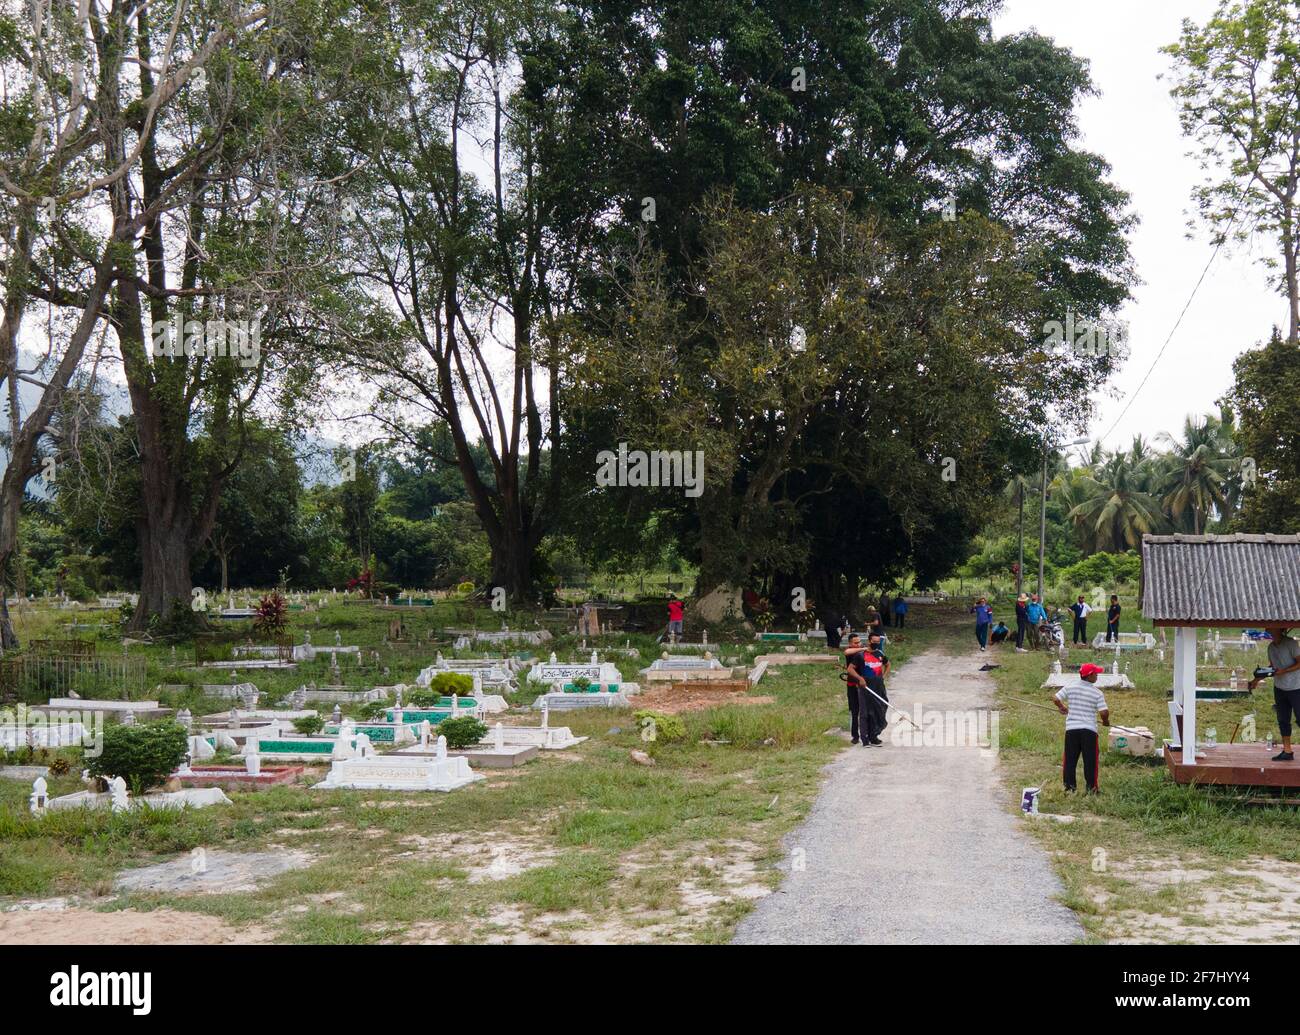 Negeri Sembilan, Malaysia - 4. Apr 2021: Kommunale Arbeit oder gotong-royong auf dem Friedhof. Diese Aktivität wird gewöhnlich von muslimen als Kommun durchgeführt Stockfoto